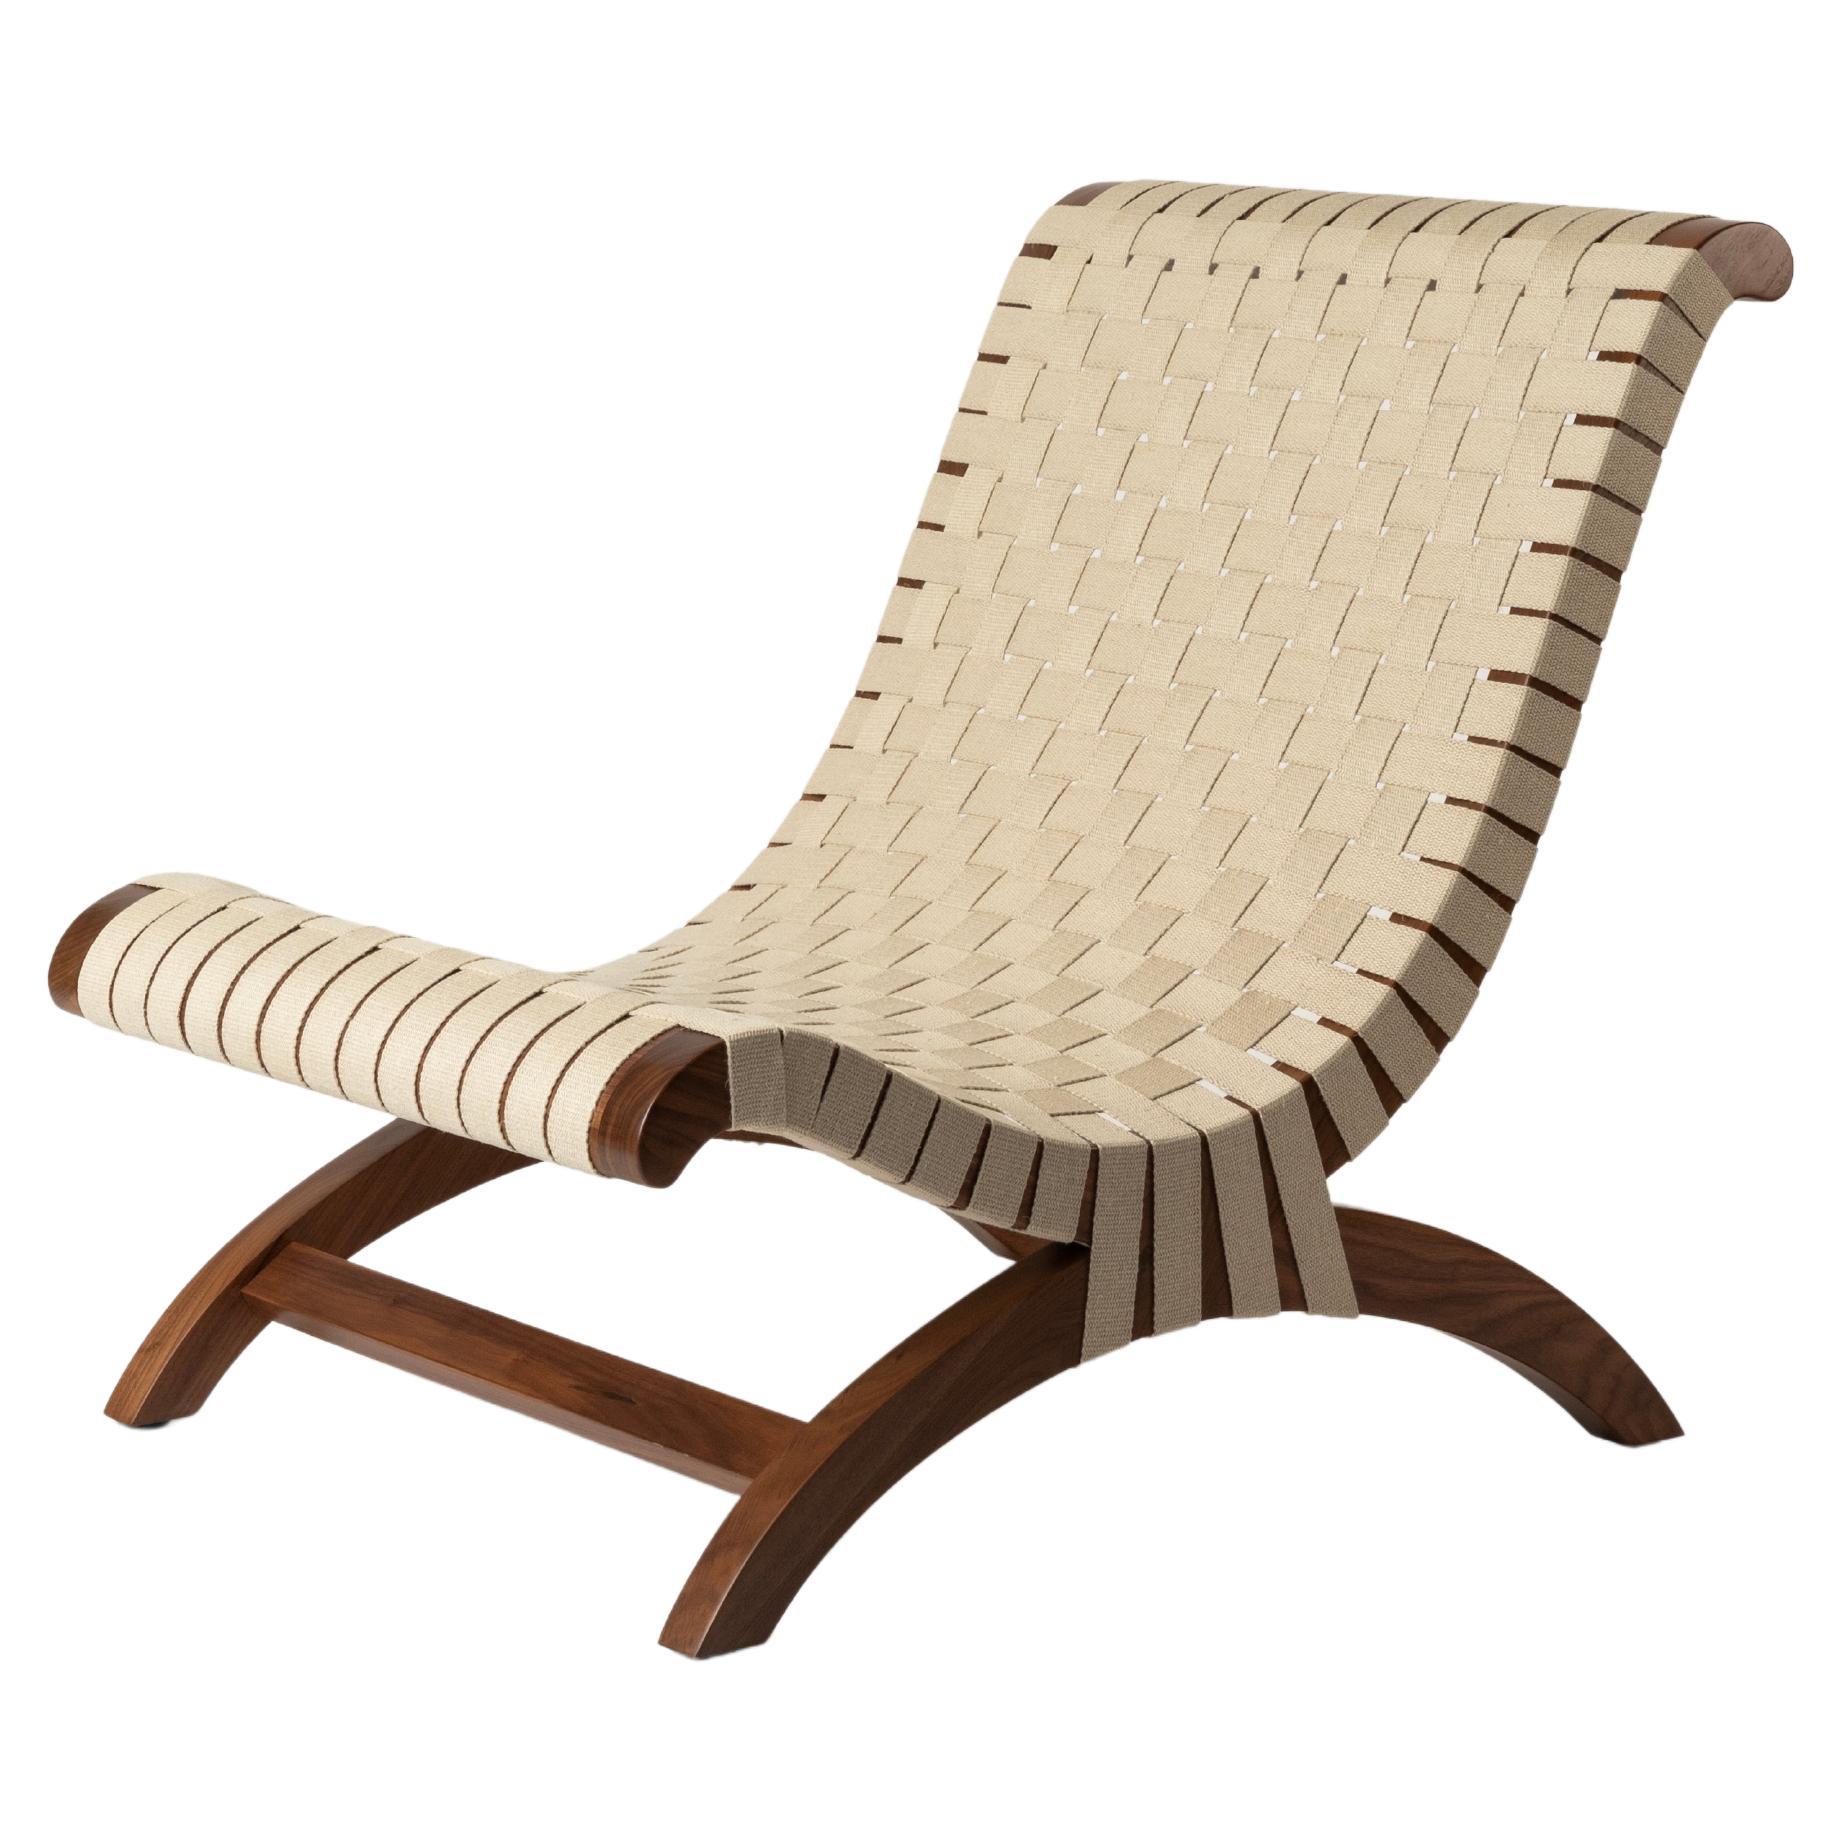 Clara Porset's Mexican Walnut & Hemp Butaque Chair, lizenzierte Neuauflage von Luteca